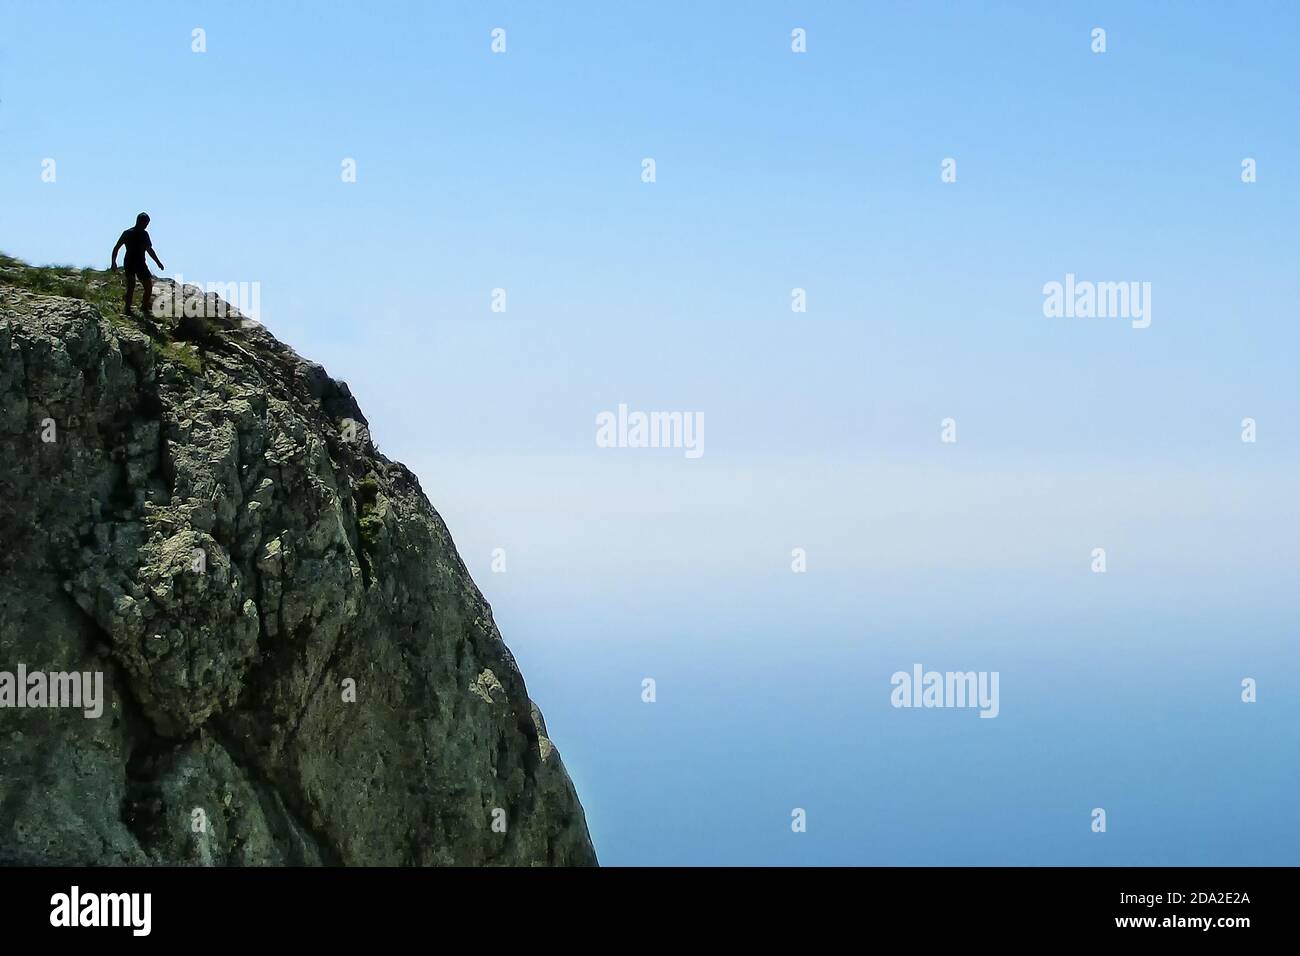 Un uomo su una roccia vicino al bordo dell'abisso. Una scogliera contro un cielo blu e un uomo che può cadere. Rischio, paura e vicinanza della morte. Un passo per l'i Foto Stock